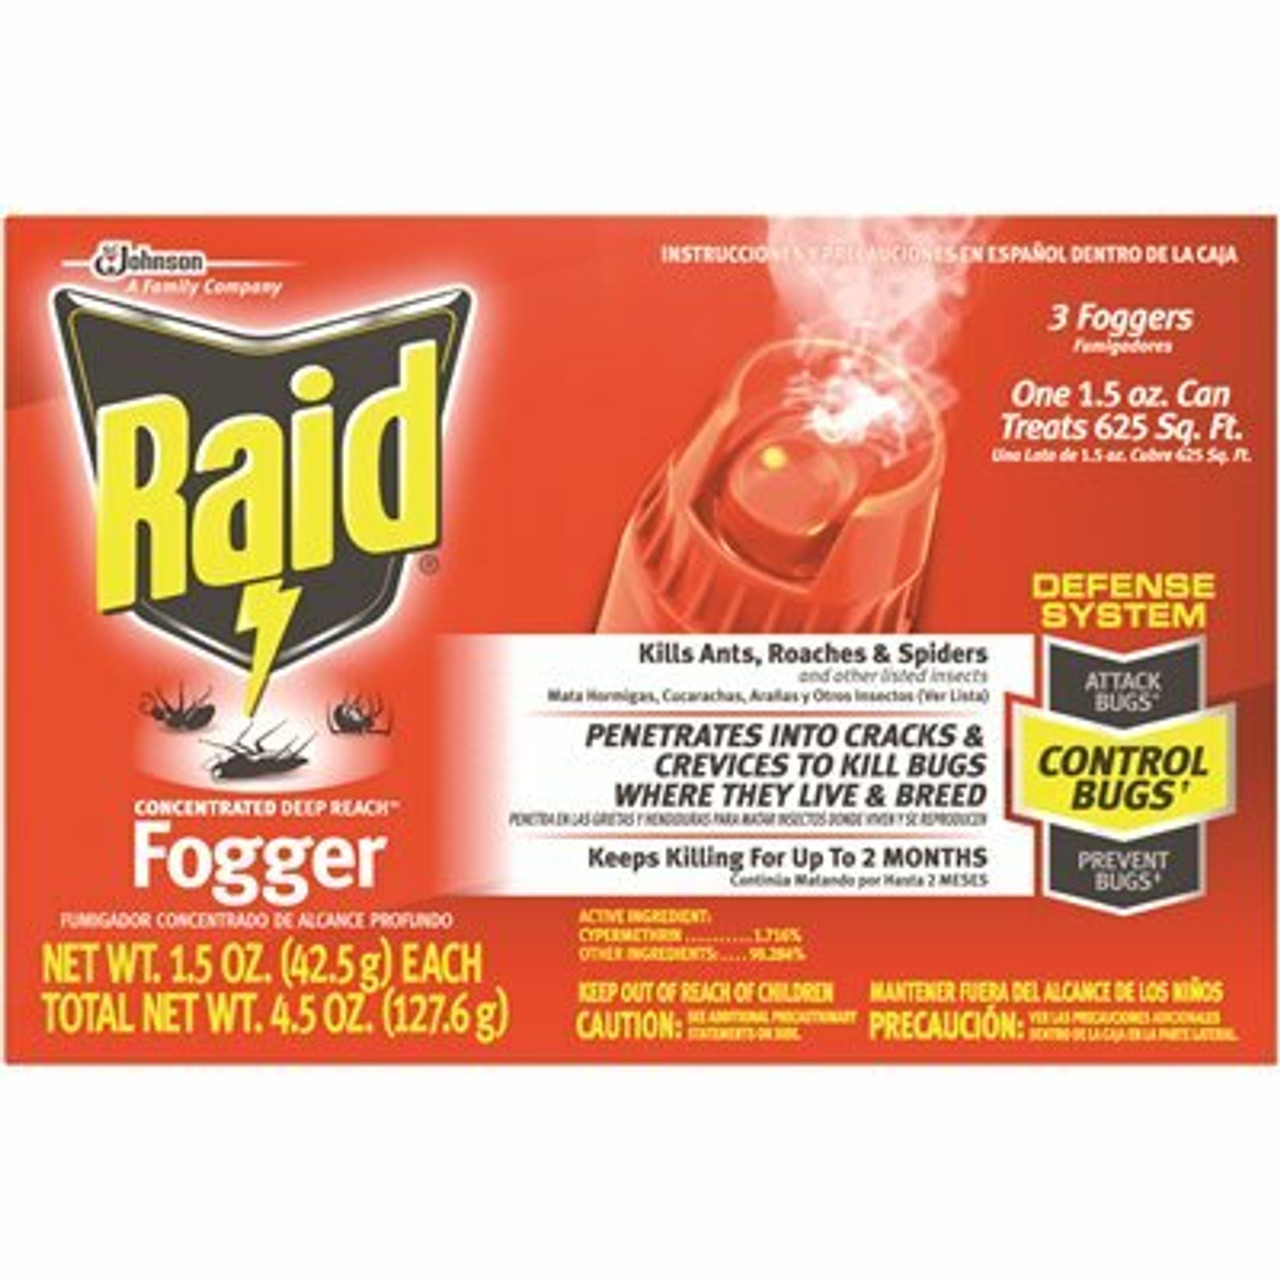 Raid 1.5 Oz. Concentrated Deep Reach Fogger (3-Pack)